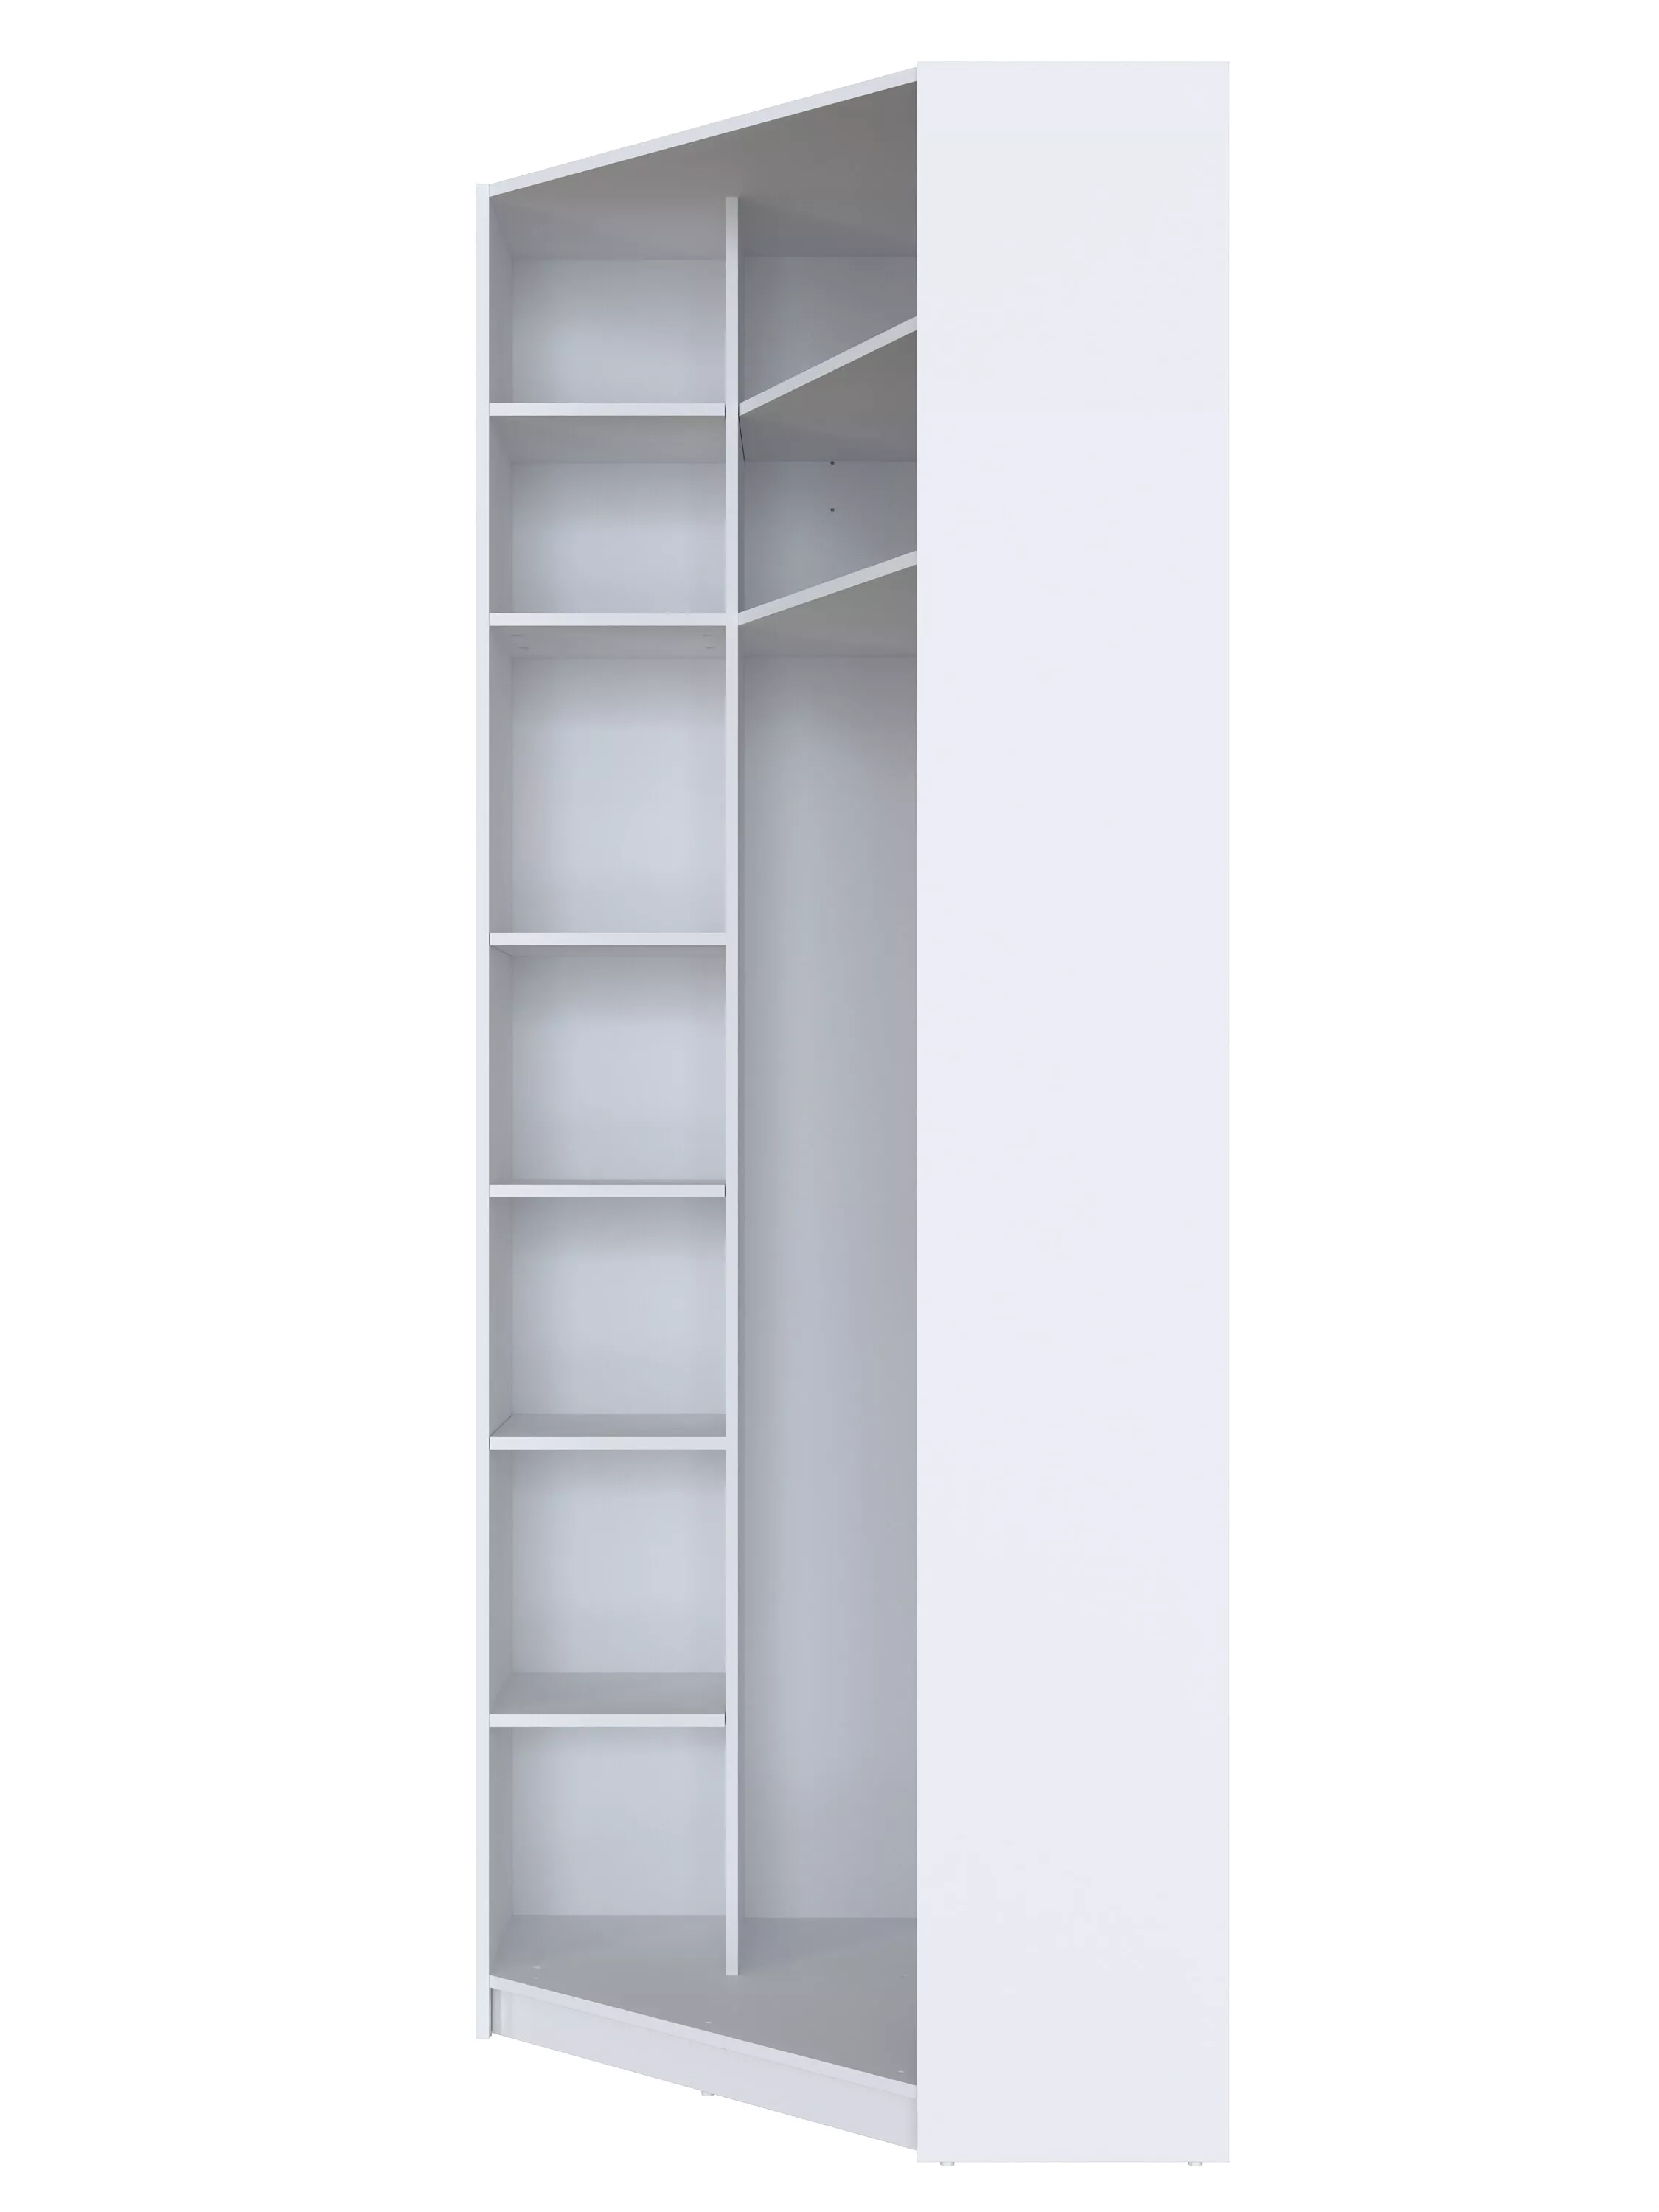 Шкафы и стеллажи | Гардеробные системы | МОБИ Корпус шкафа углового SZFN L/P (Белый) Мебель ☆ IDEA в Севастополе| BRW, Брест anons